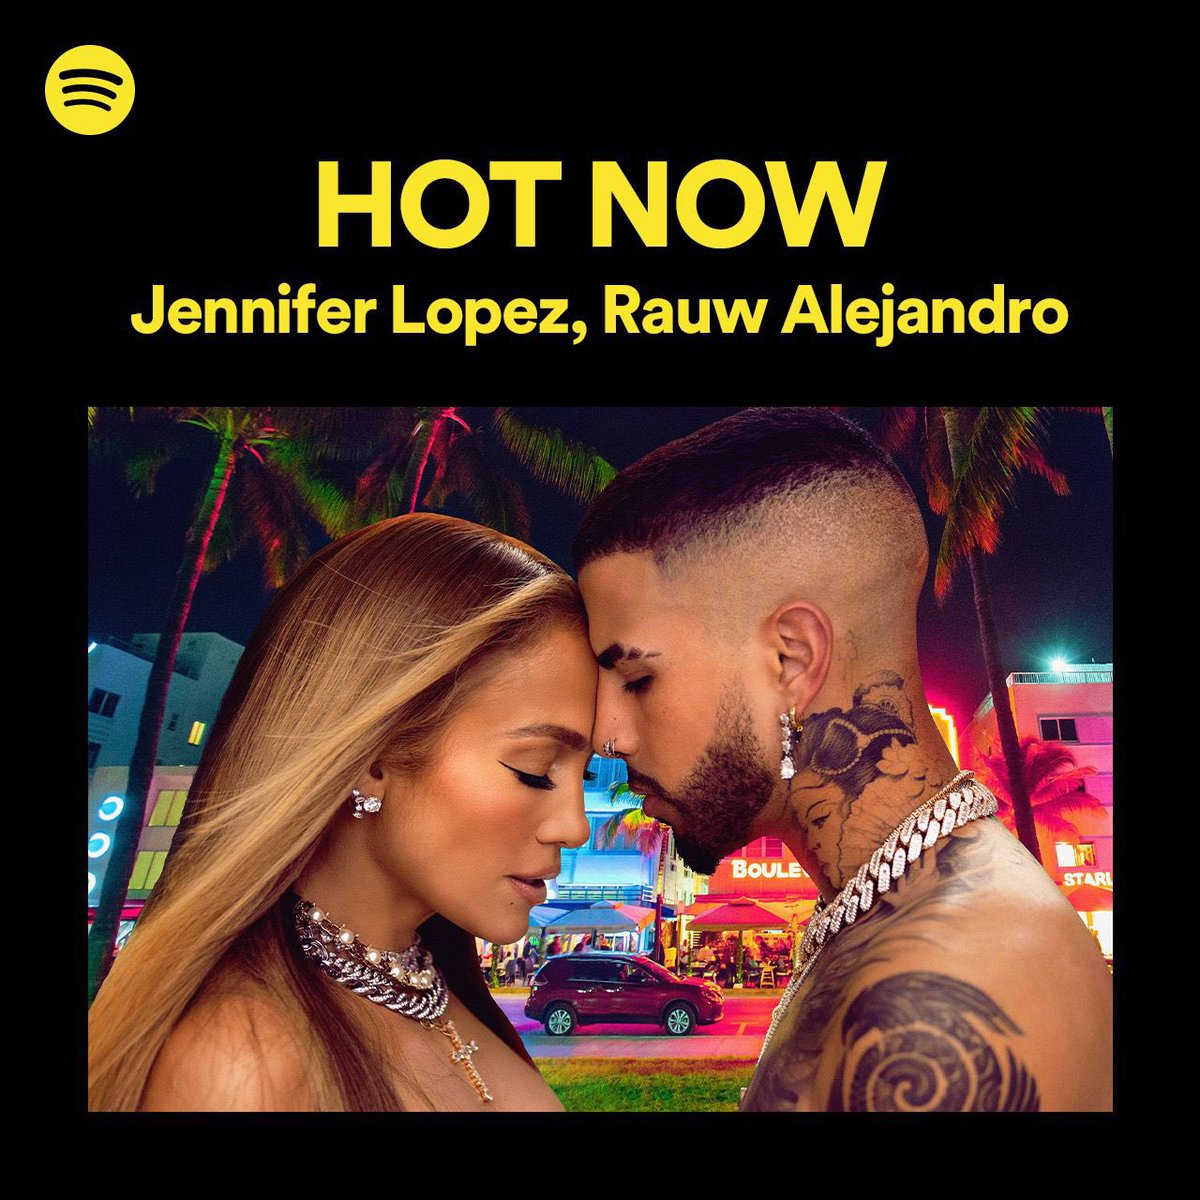 Listen to #CambiaElPaso on the @Spotify #HotNow playlist 💛💜 @rauwalejandro  